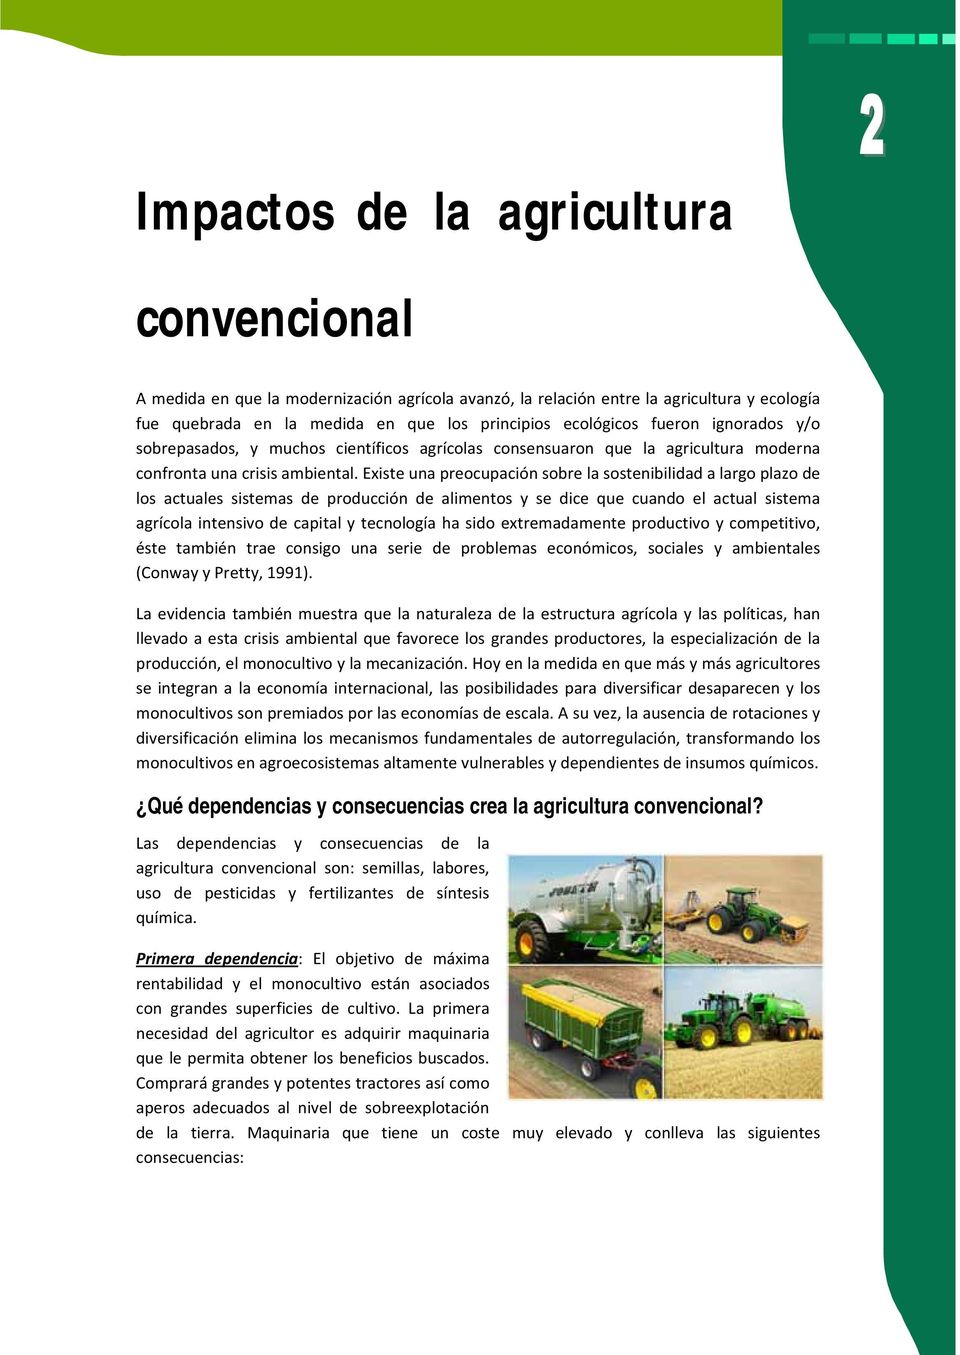 Existe una preocupación sobre la sostenibilidad a largo plazo de los actuales sistemas de producción de alimentos y se dice que cuando el actual sistema agrícola intensivo de capital y tecnología ha